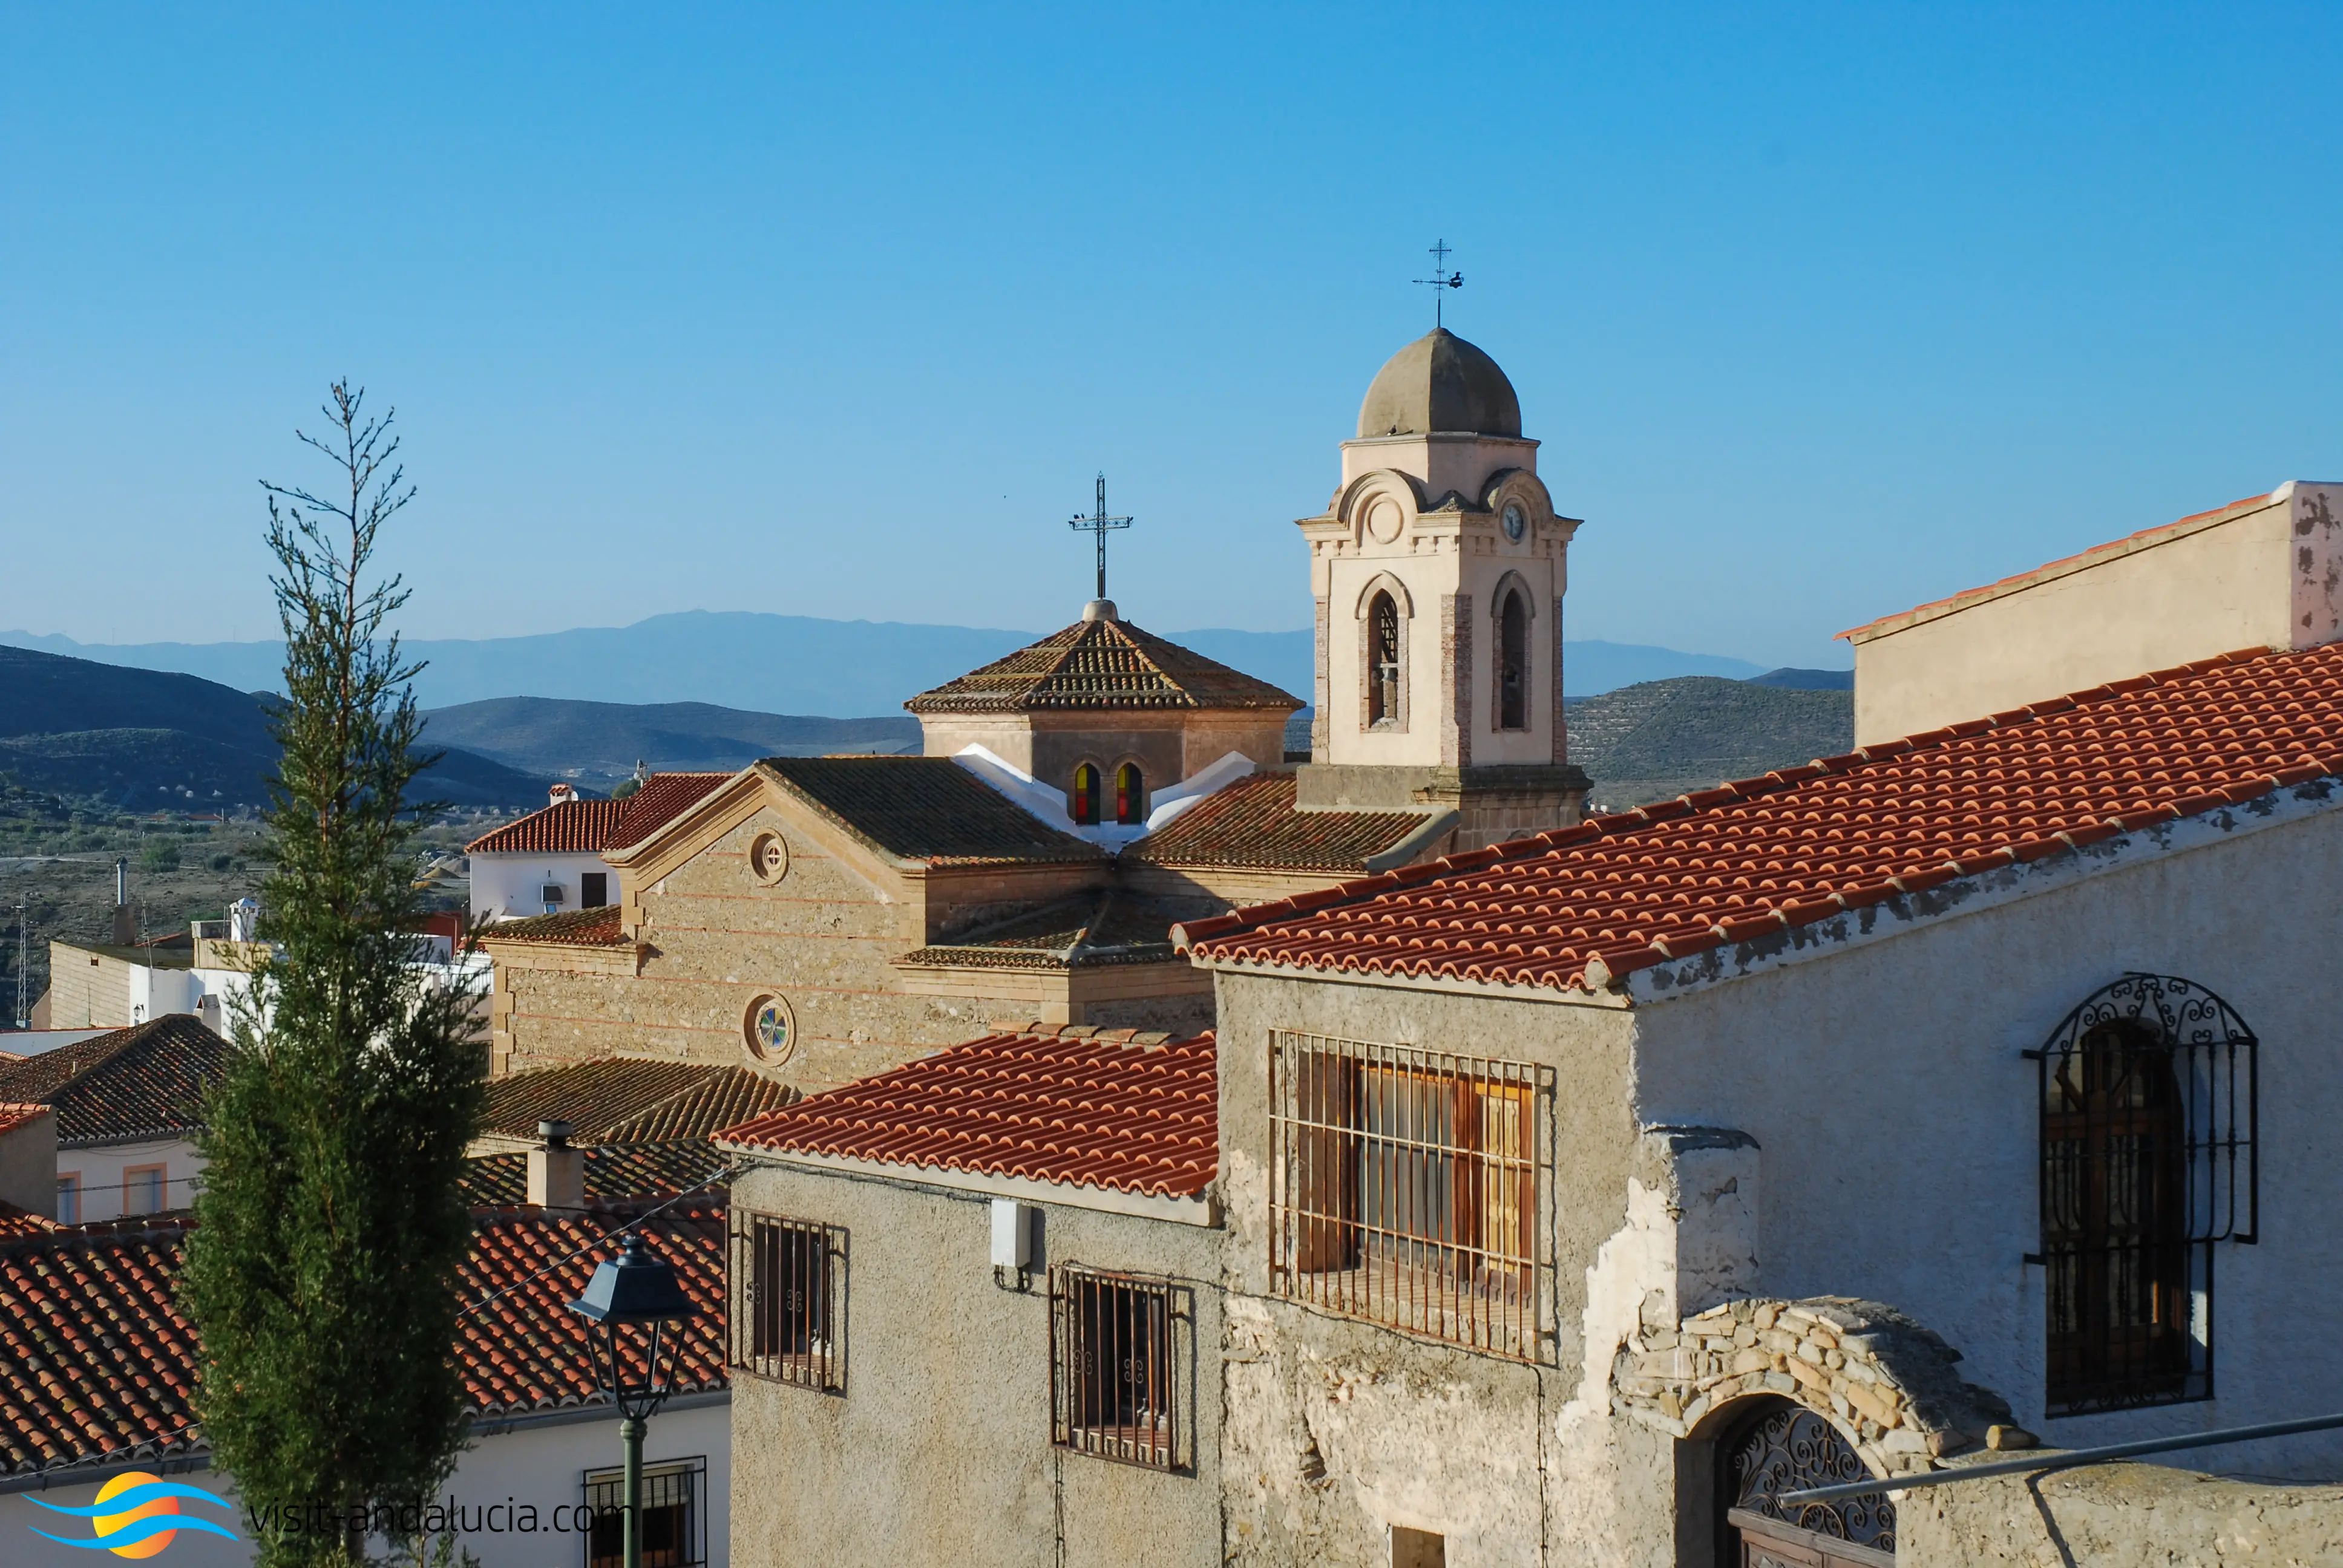 A View of Uleila del Campo, Almeria Province